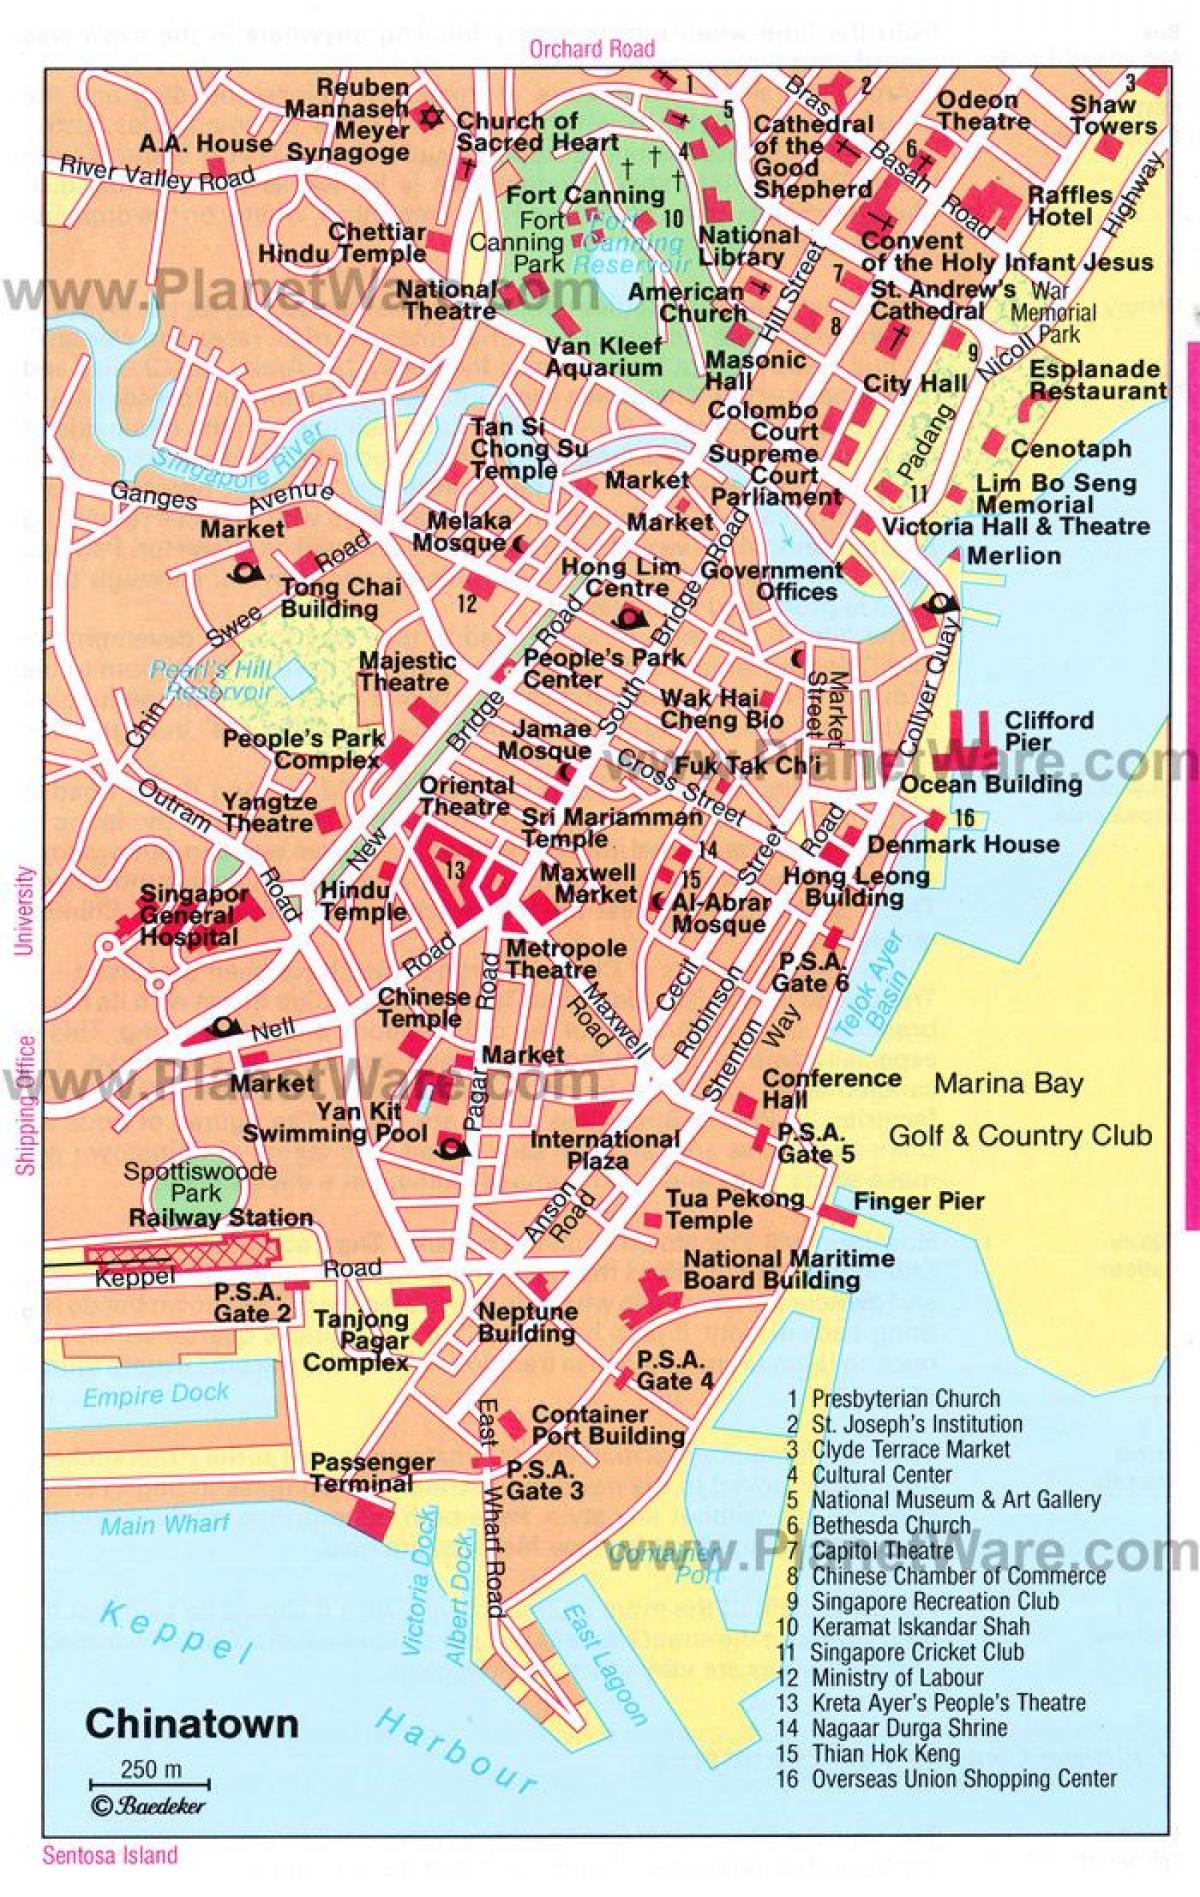 чайнатаун Սինգապուր քարտեզ